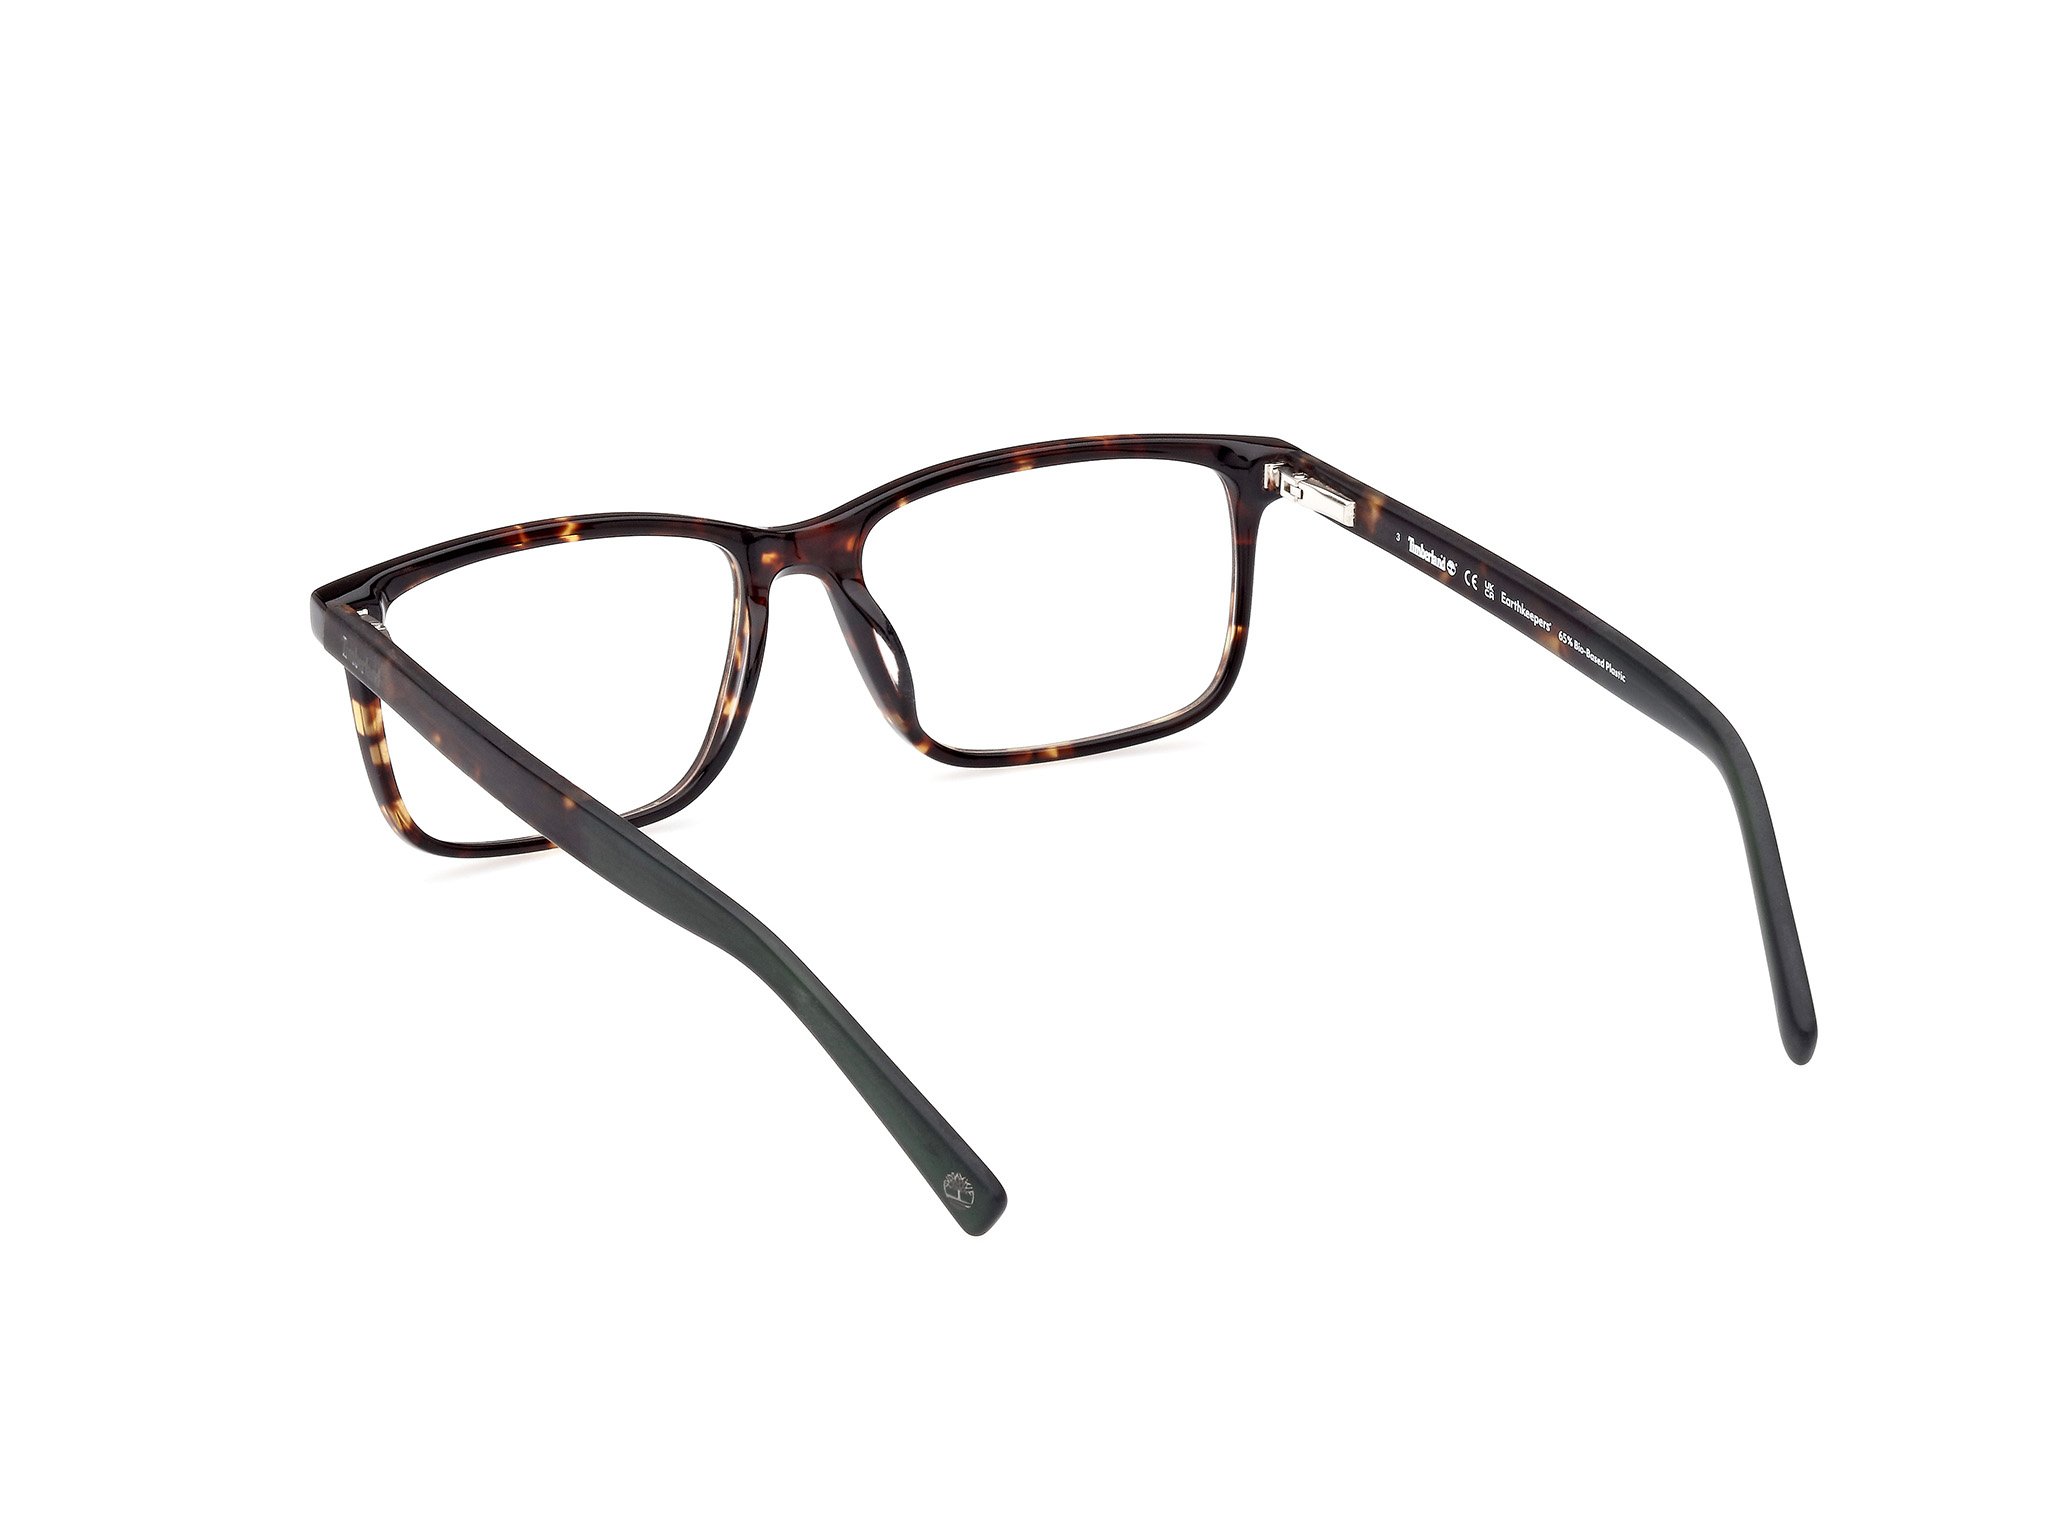 Das Bild zeigt die Korrektionsbrille TB1823-H 052 von der Marke Timberland in havanna.